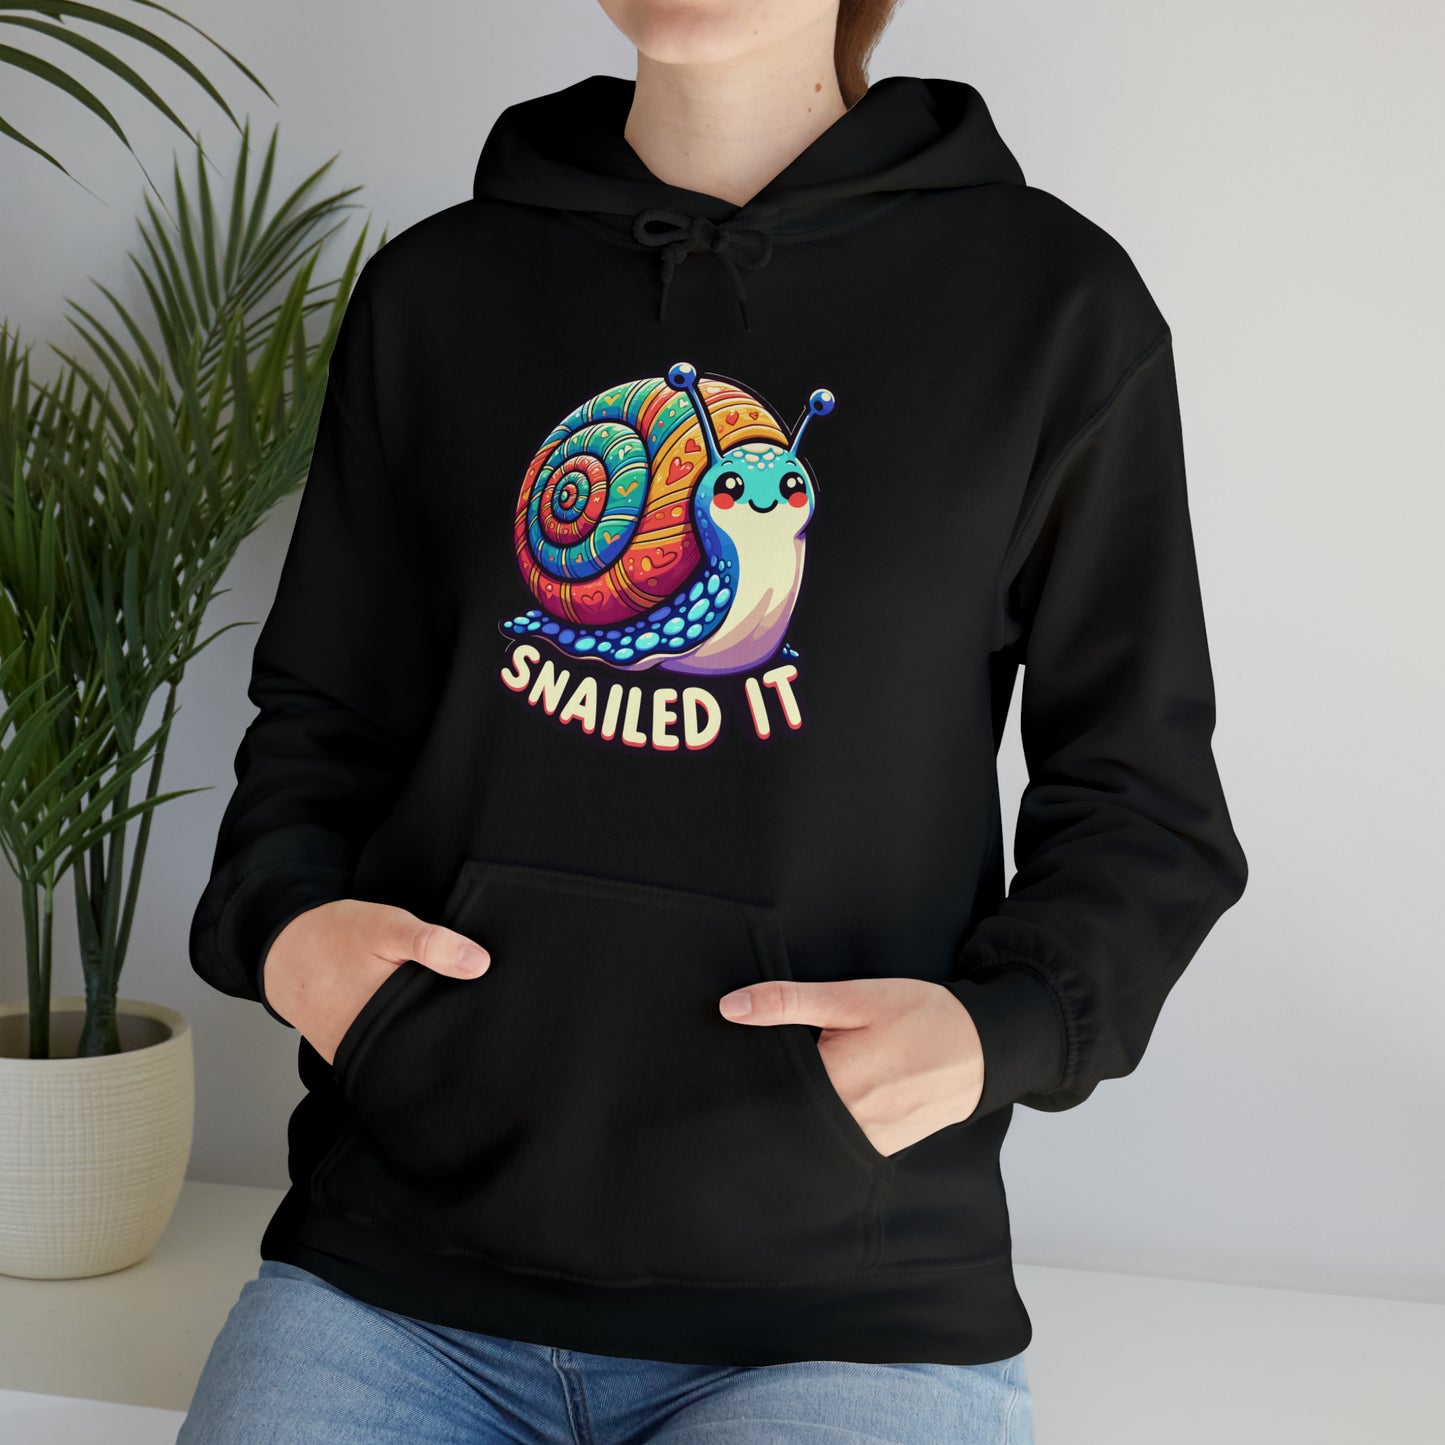 Snailed It Hooded Sweatshirt